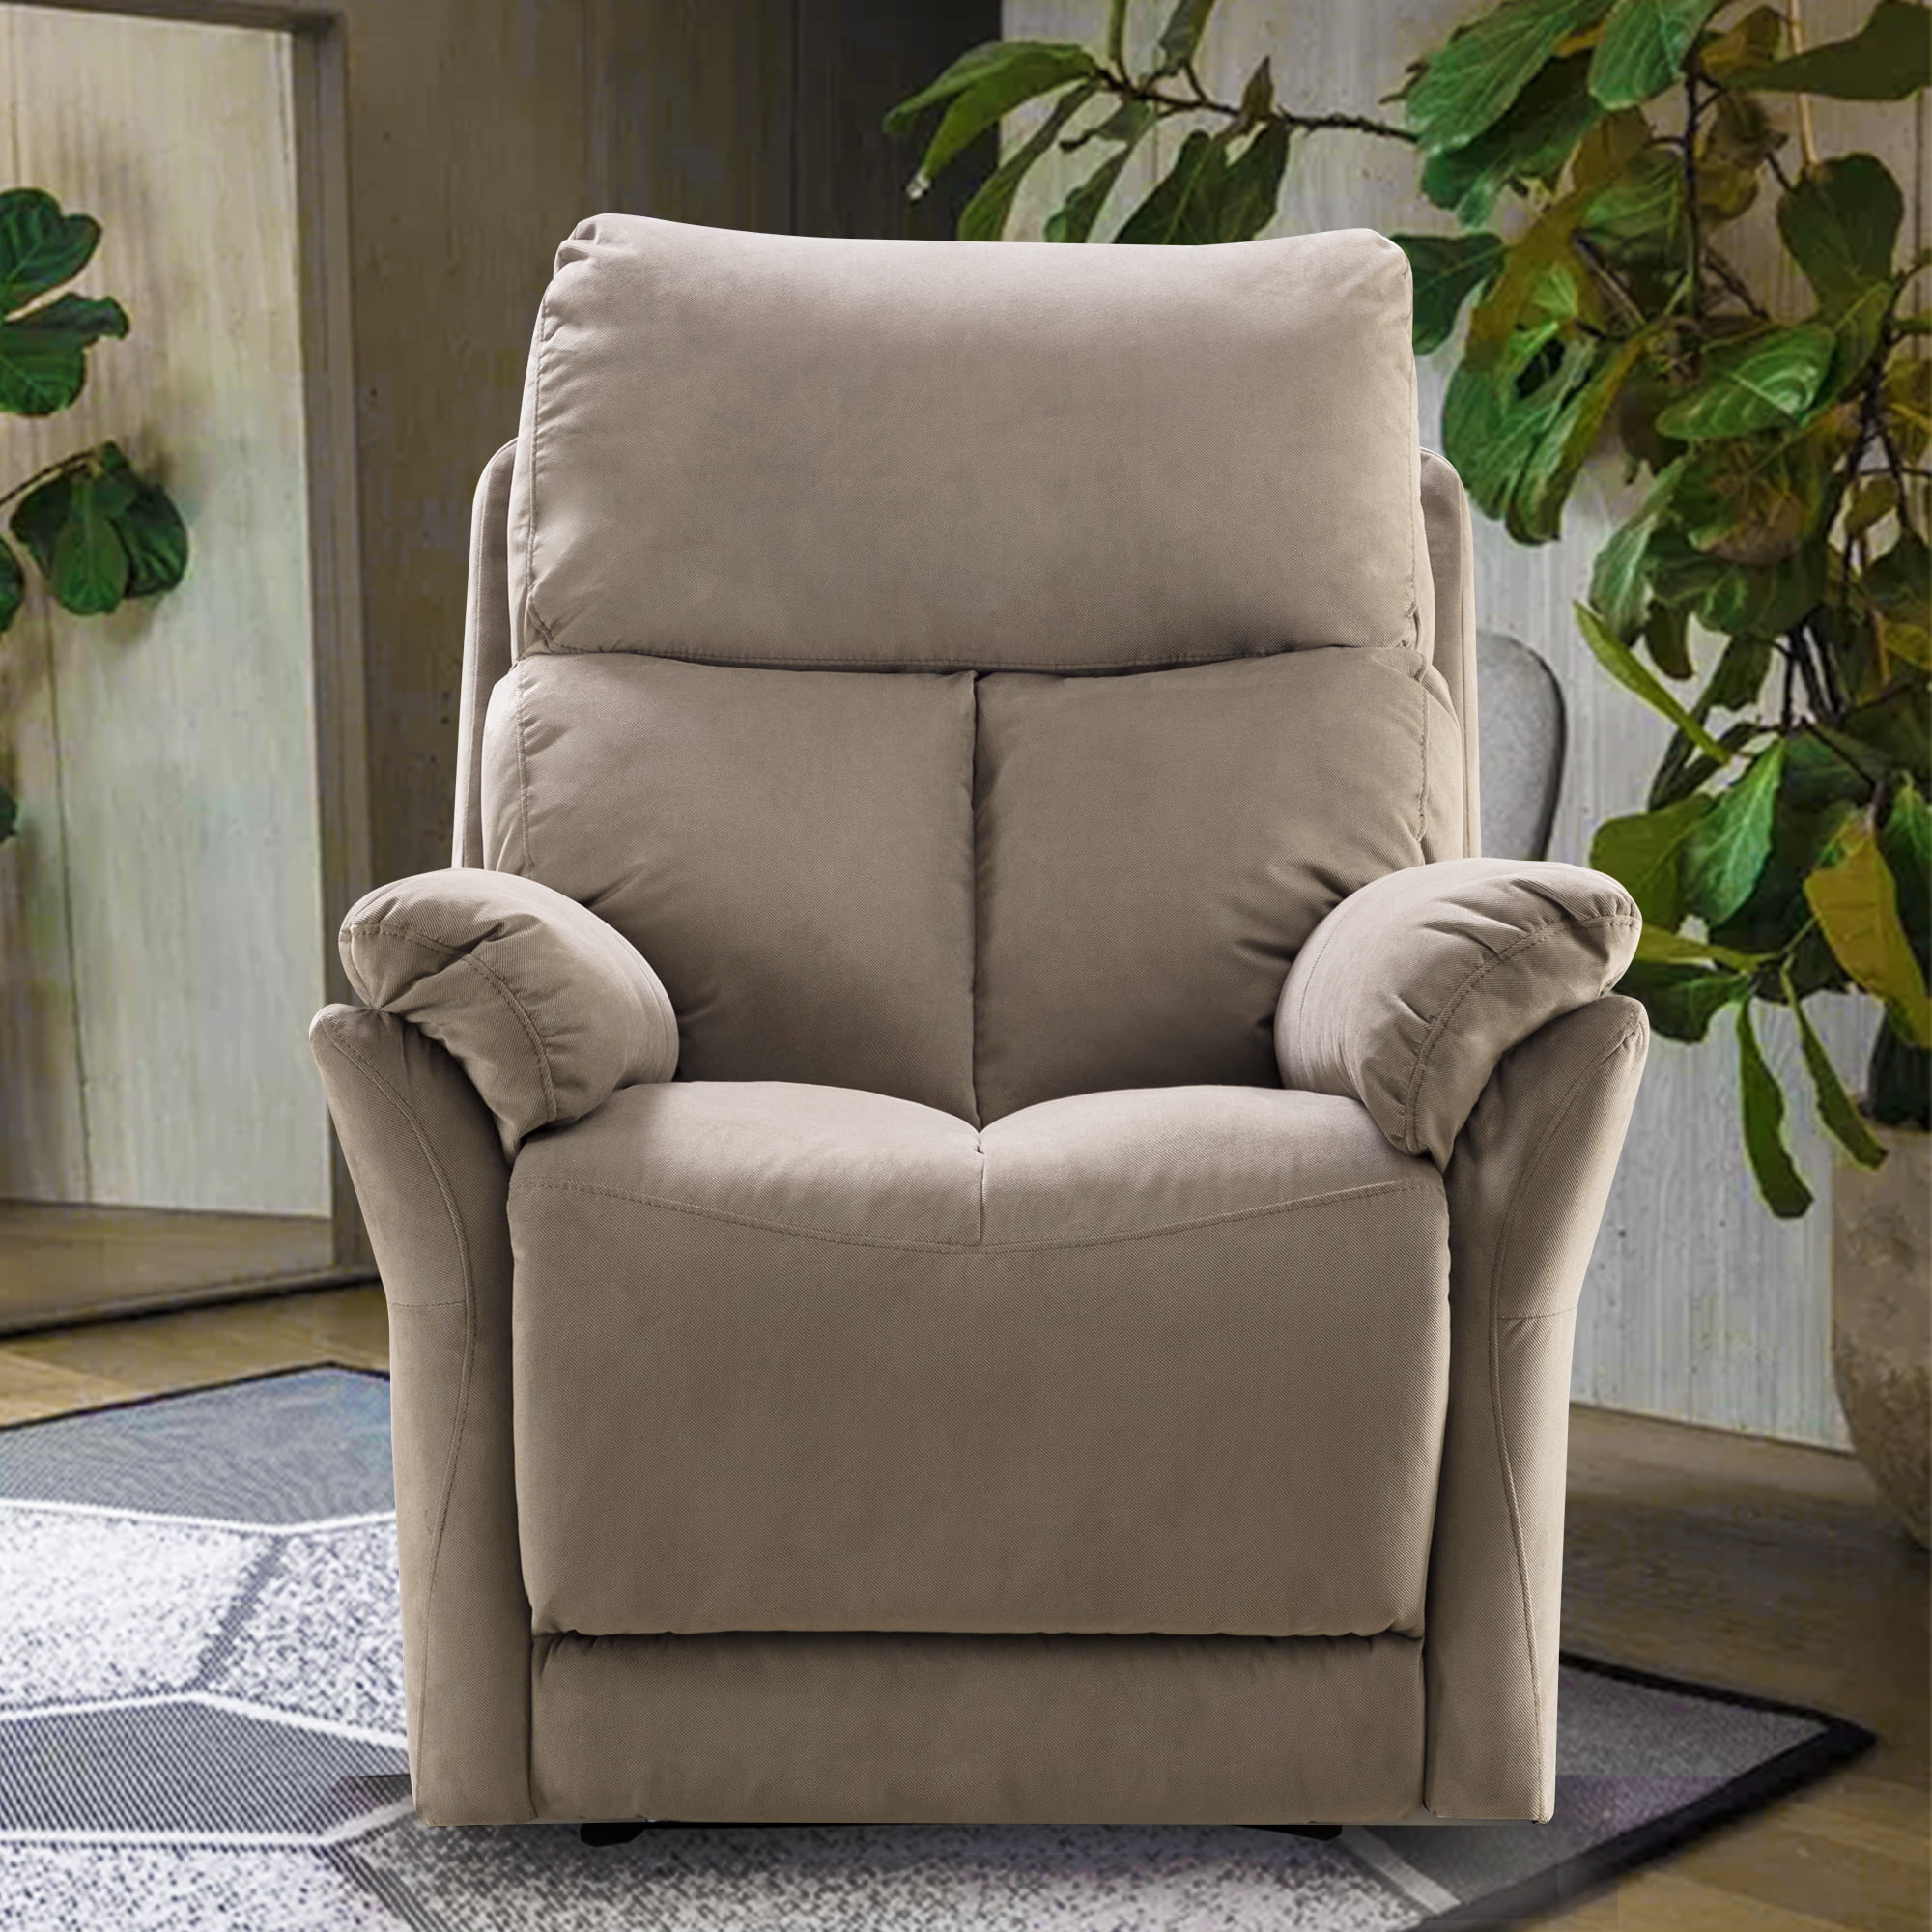 Rocker Recliner, Elderly Sofa Seat, Fabric Recliner Chair